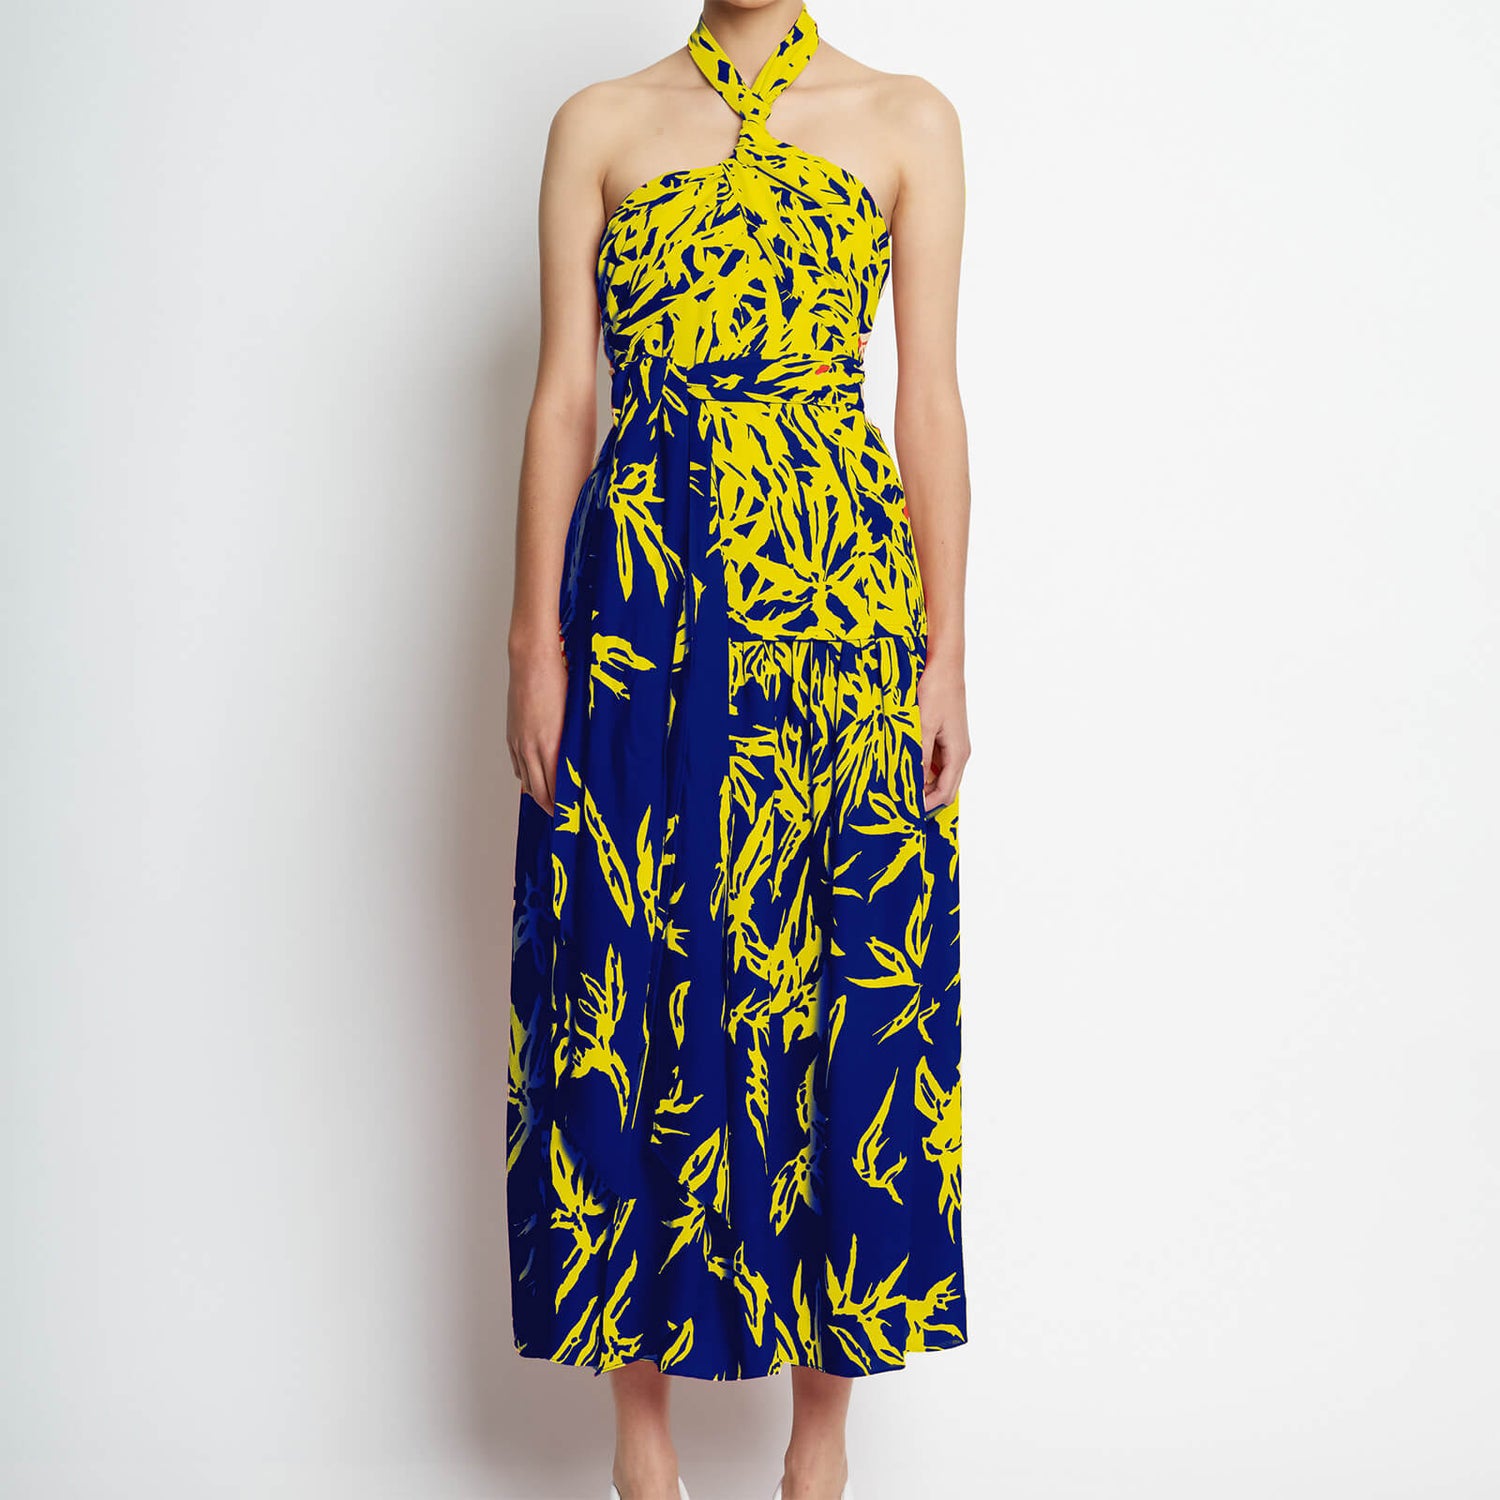 Proenza Schouler Women's Degrade Floral Halter Dress - Cobalt Mult - US2/UK 8